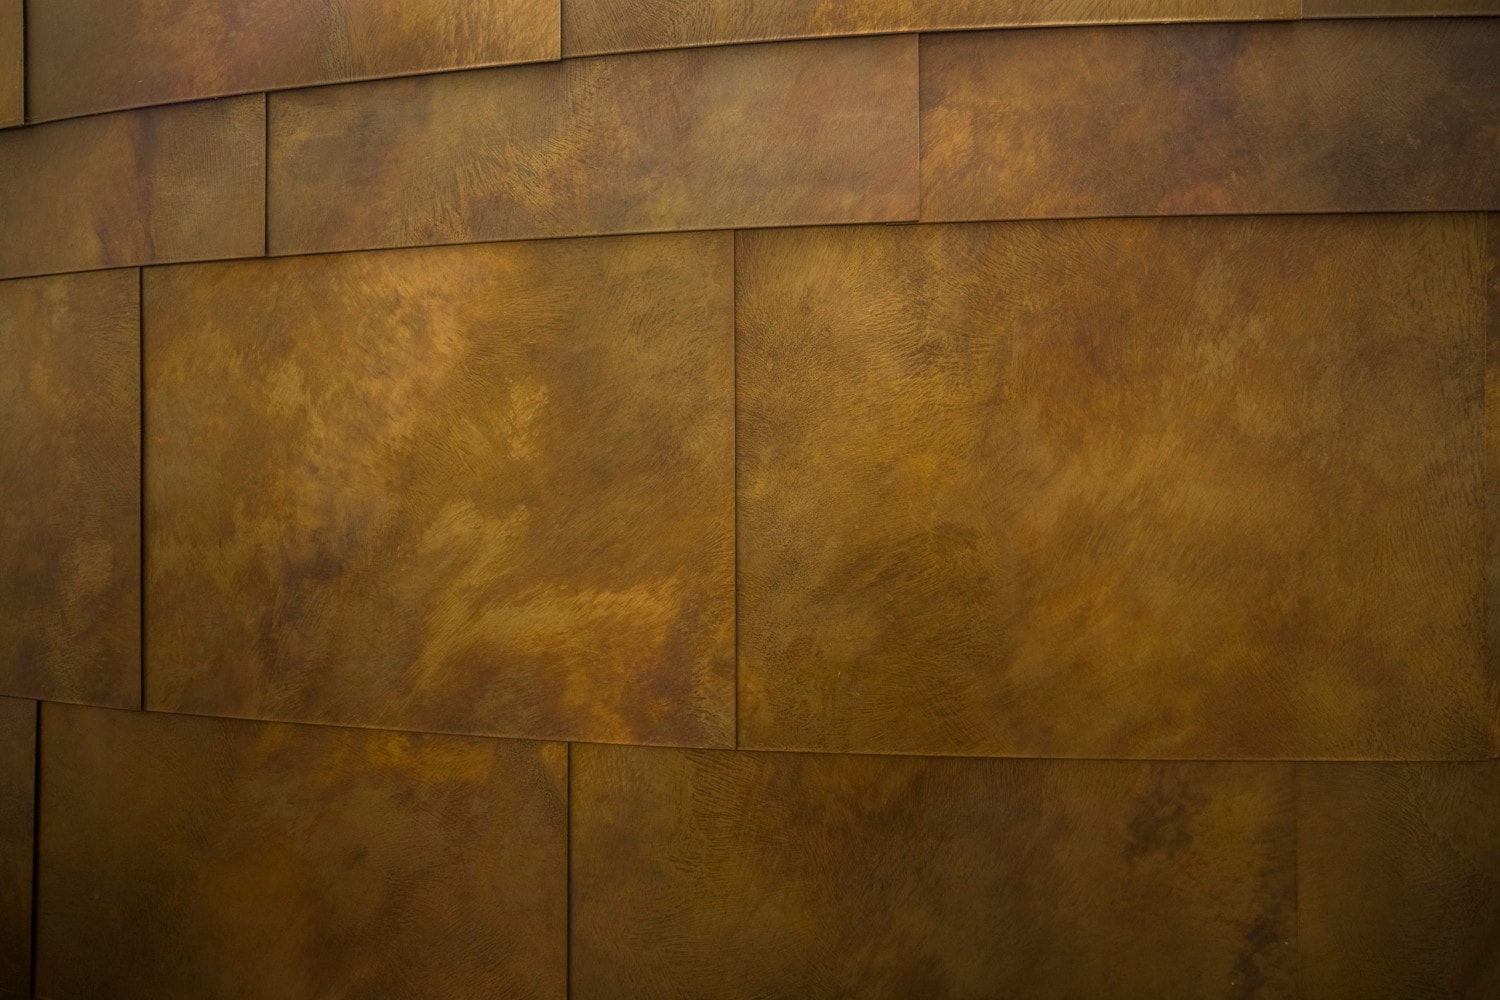 Interior copper panels for the Mitsitam Café in the Smithsonian.